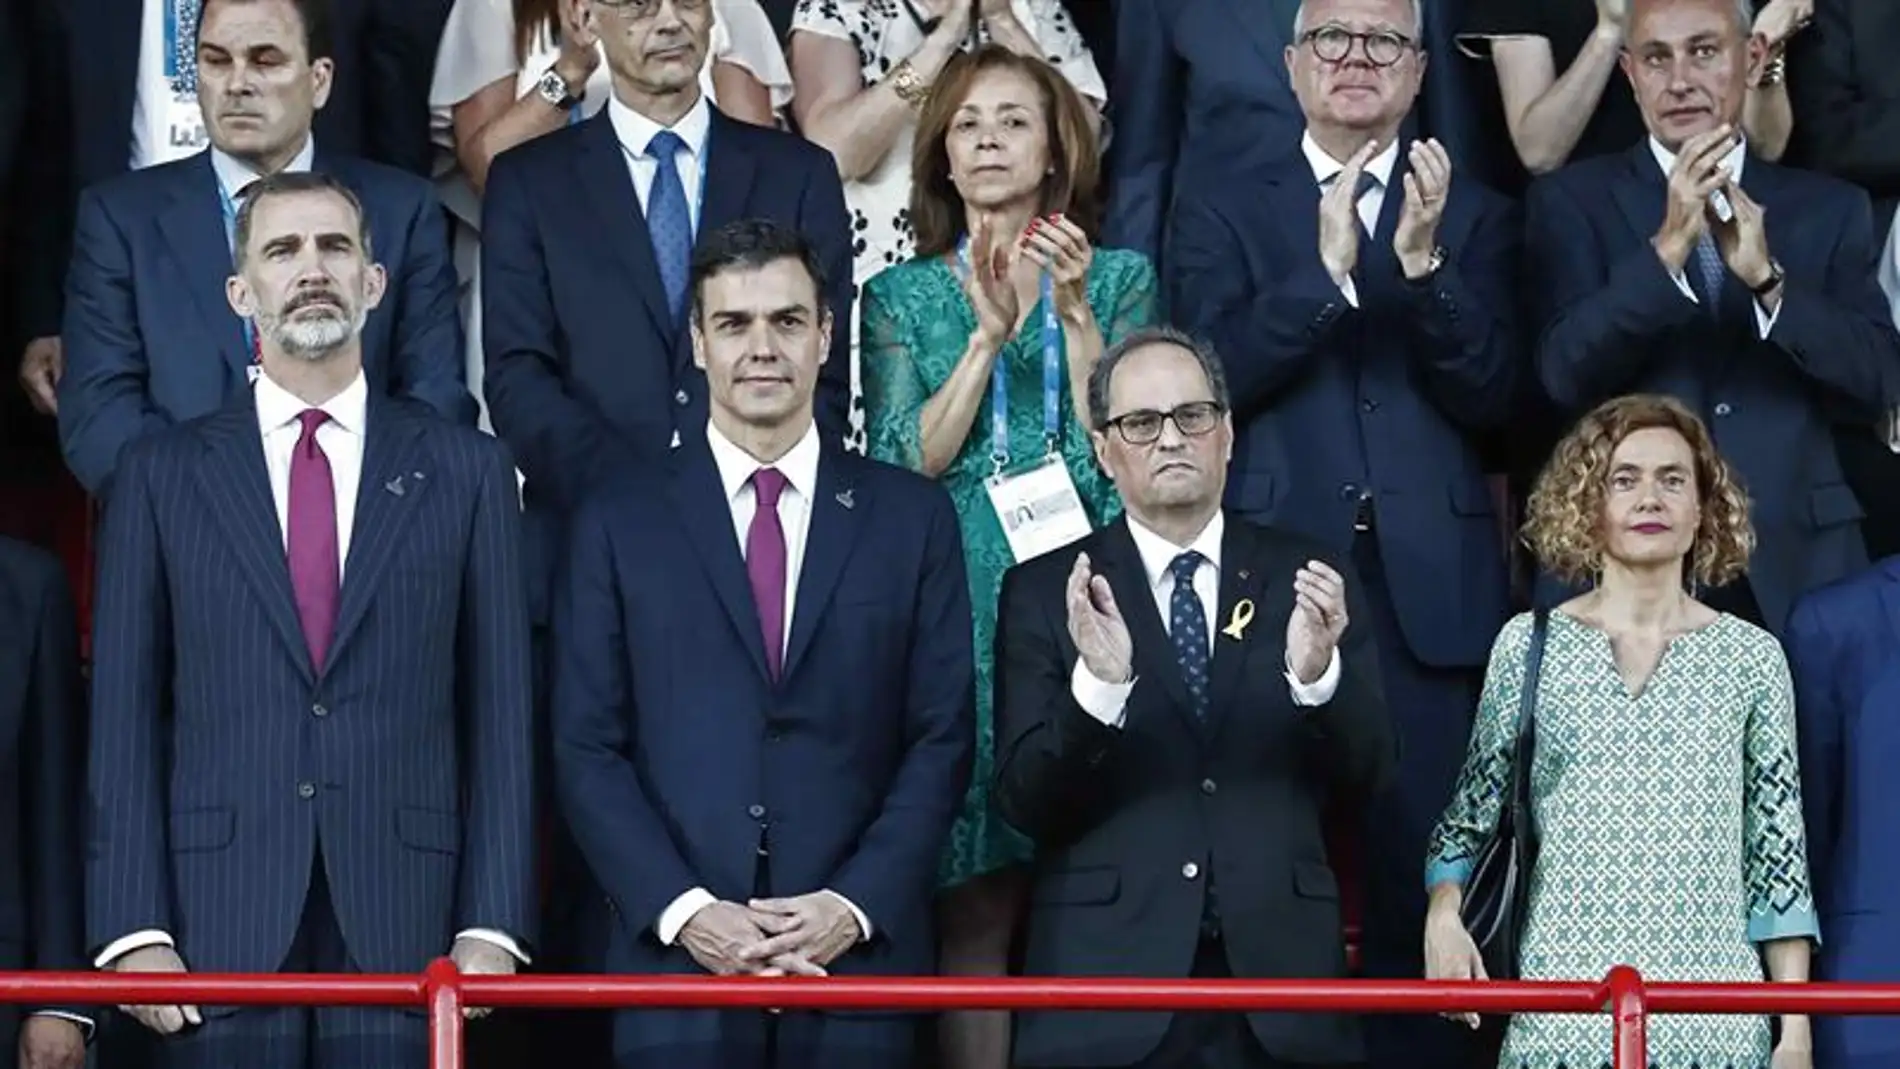 El Rey Felipe VI, Pedro Sánchez, Quim Torra y Meritxell Batet durante la inauguración de los Juegos del Mediterráneo